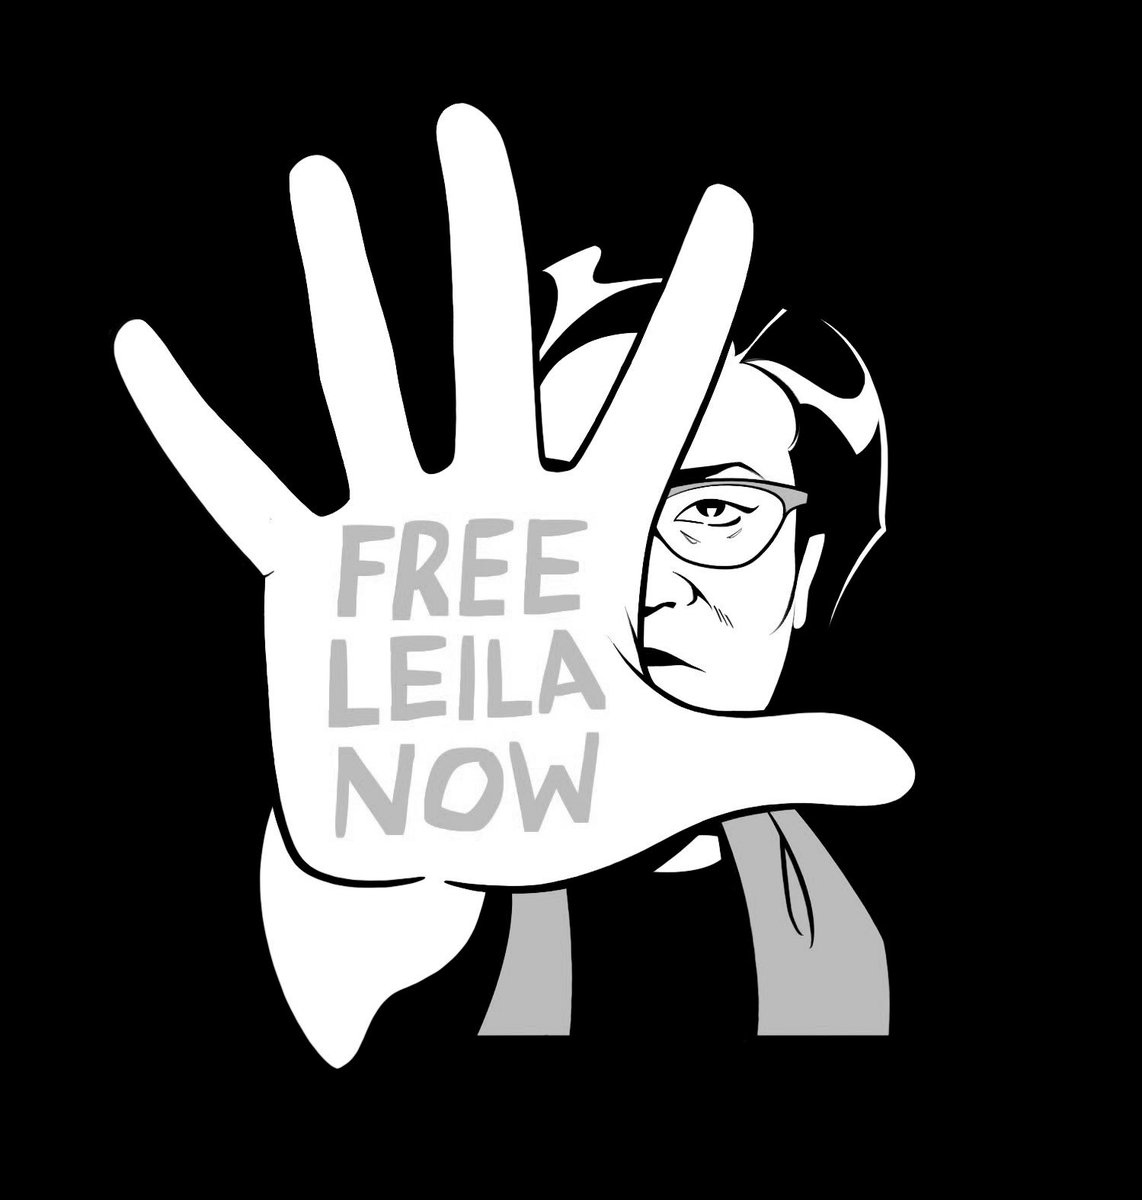 #FreeLeilaNow
#FreeLeilaDeLima
#FreeLeilaDeLimaNow !!!